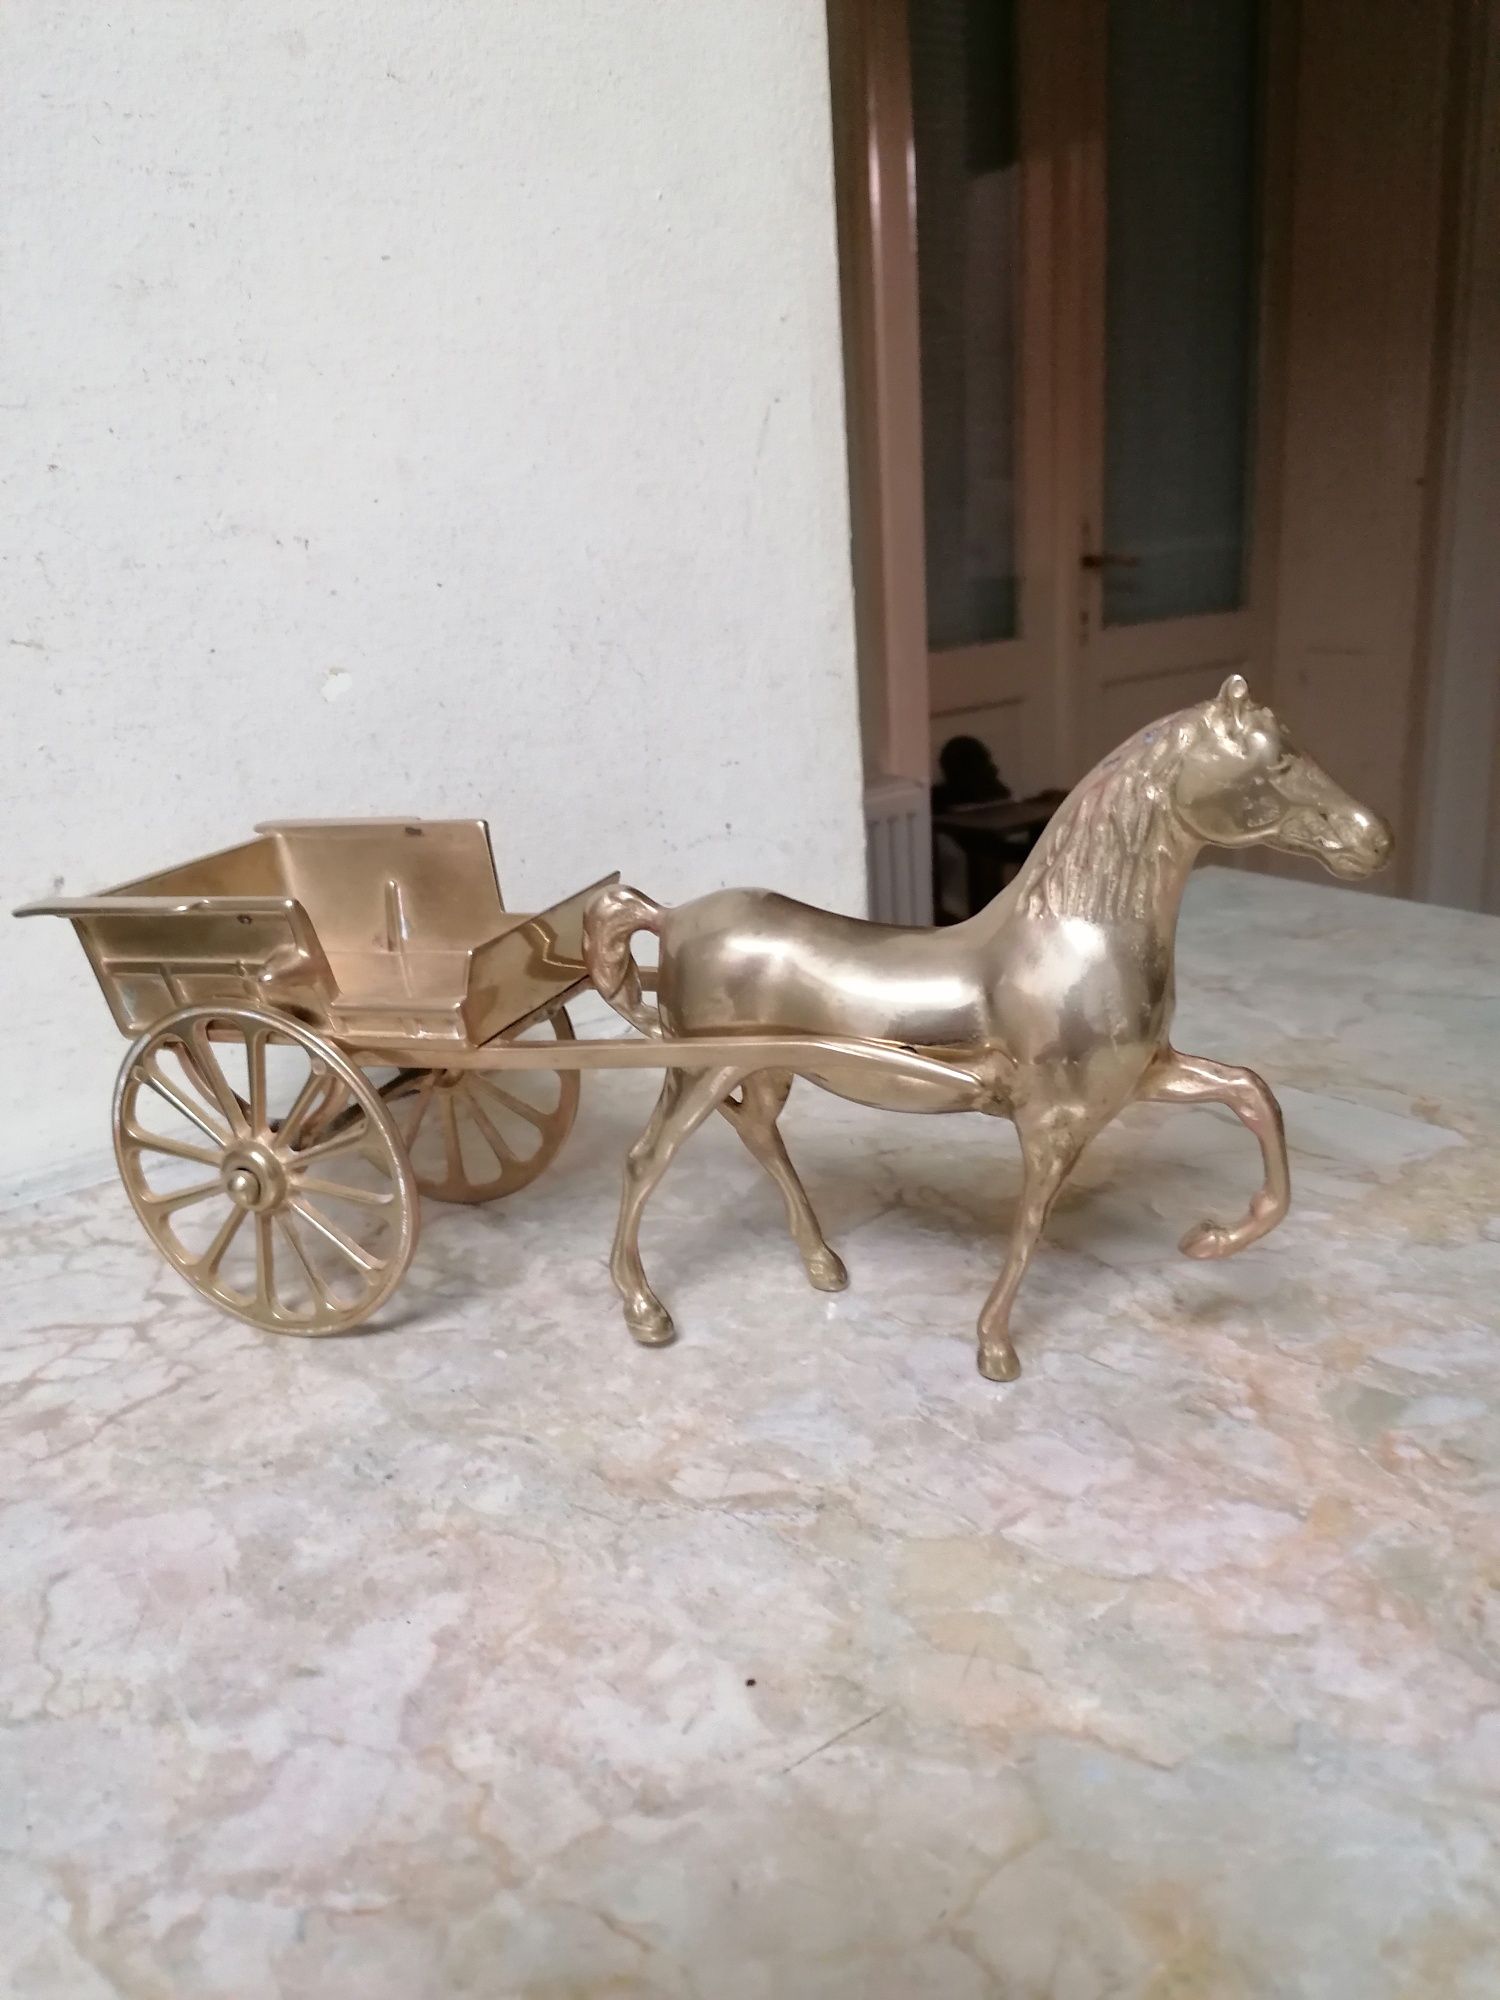 Statueta cal cu căruță din bronz